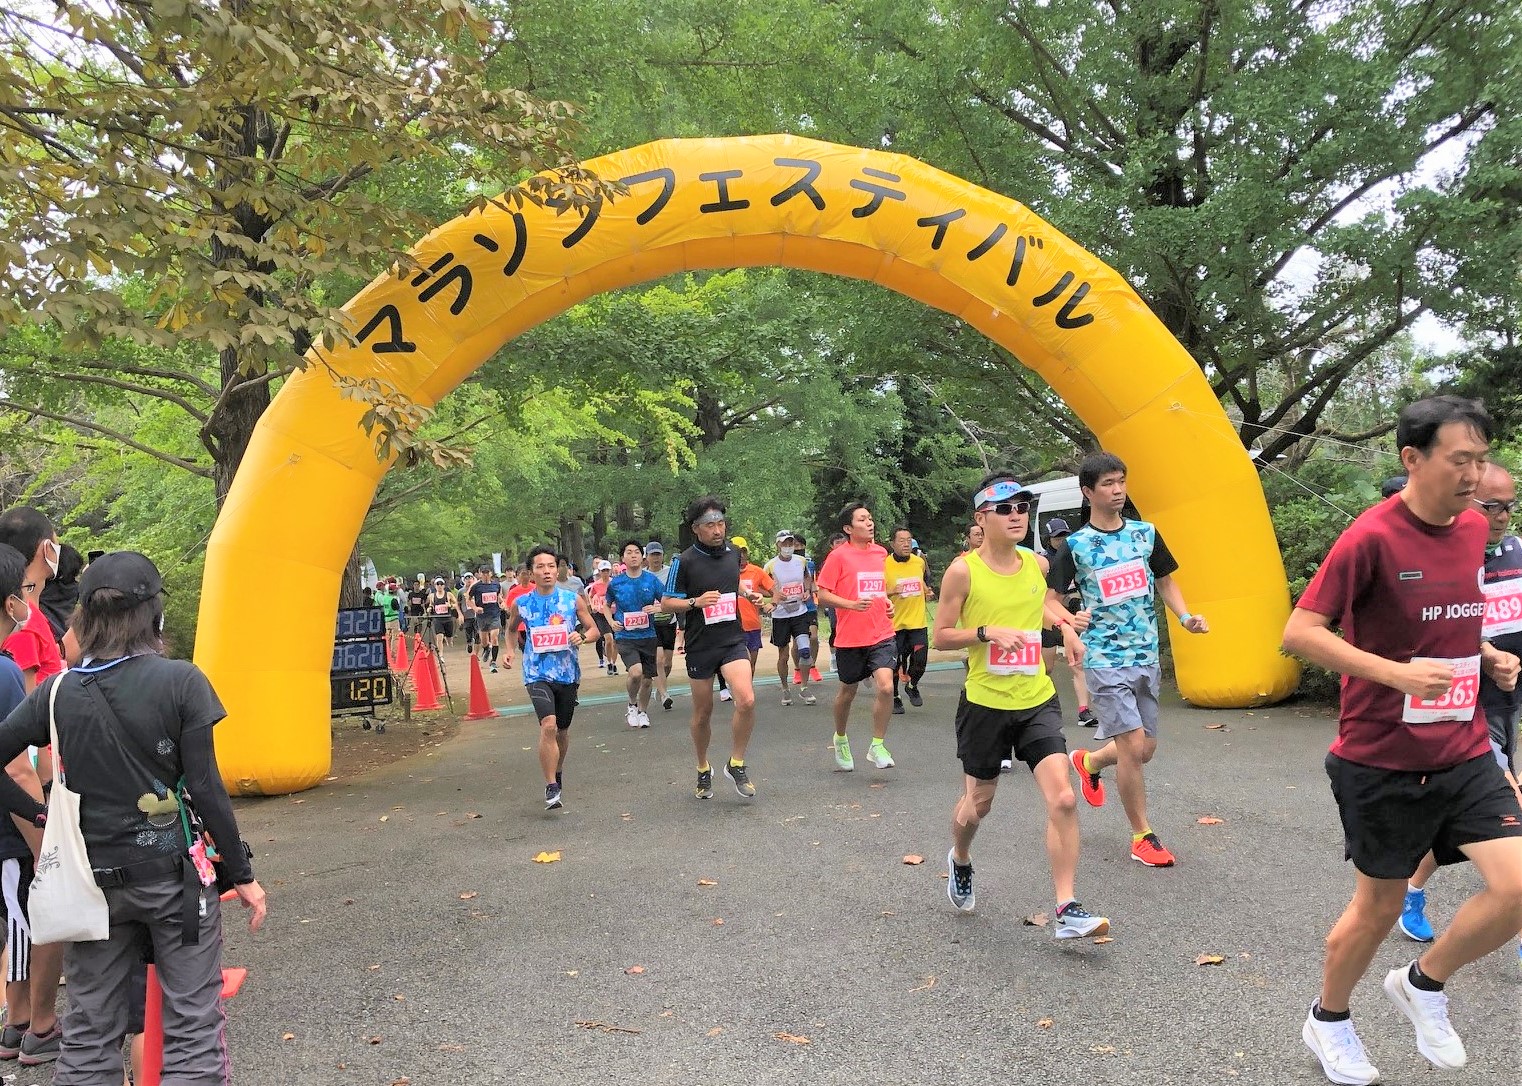 マラソンフェスティバル in 国営昭和記念公園 AUTUMN